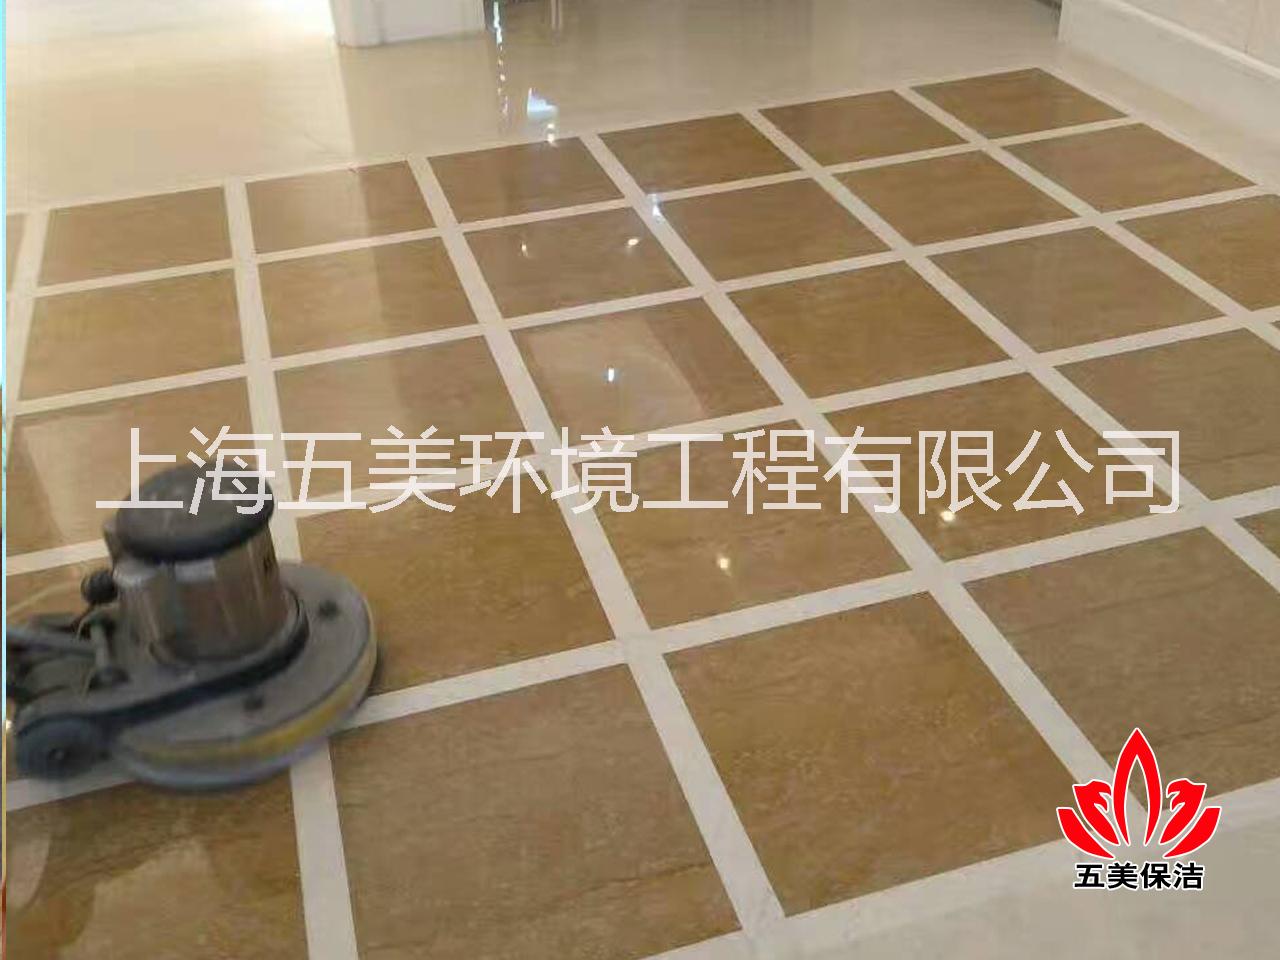 上海大理石翻新公司,上海石材翻新，上海徐汇地面清洗公司